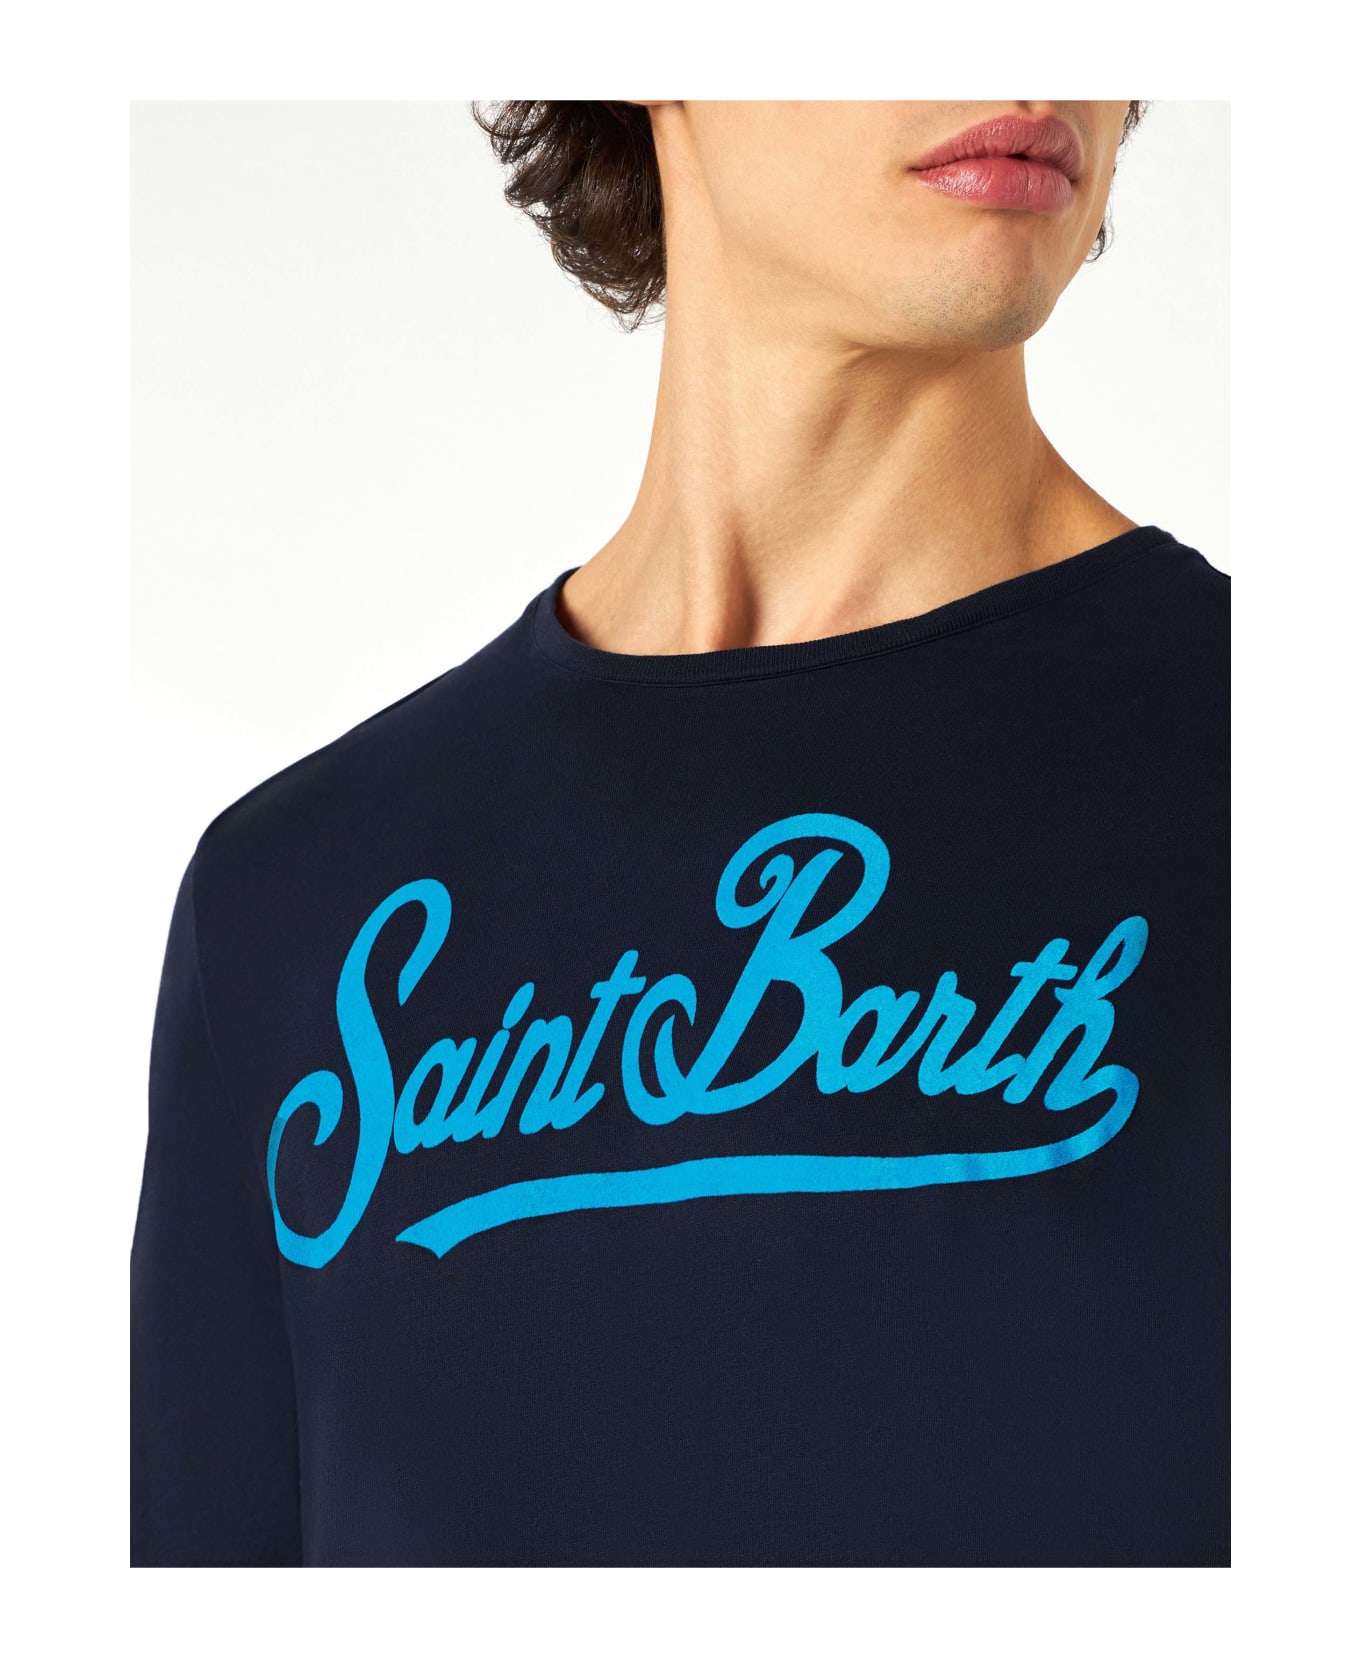 MC2 Saint Barth Man Long-sleeves T-shirt With Saint Barth Print - BLUE シャツ